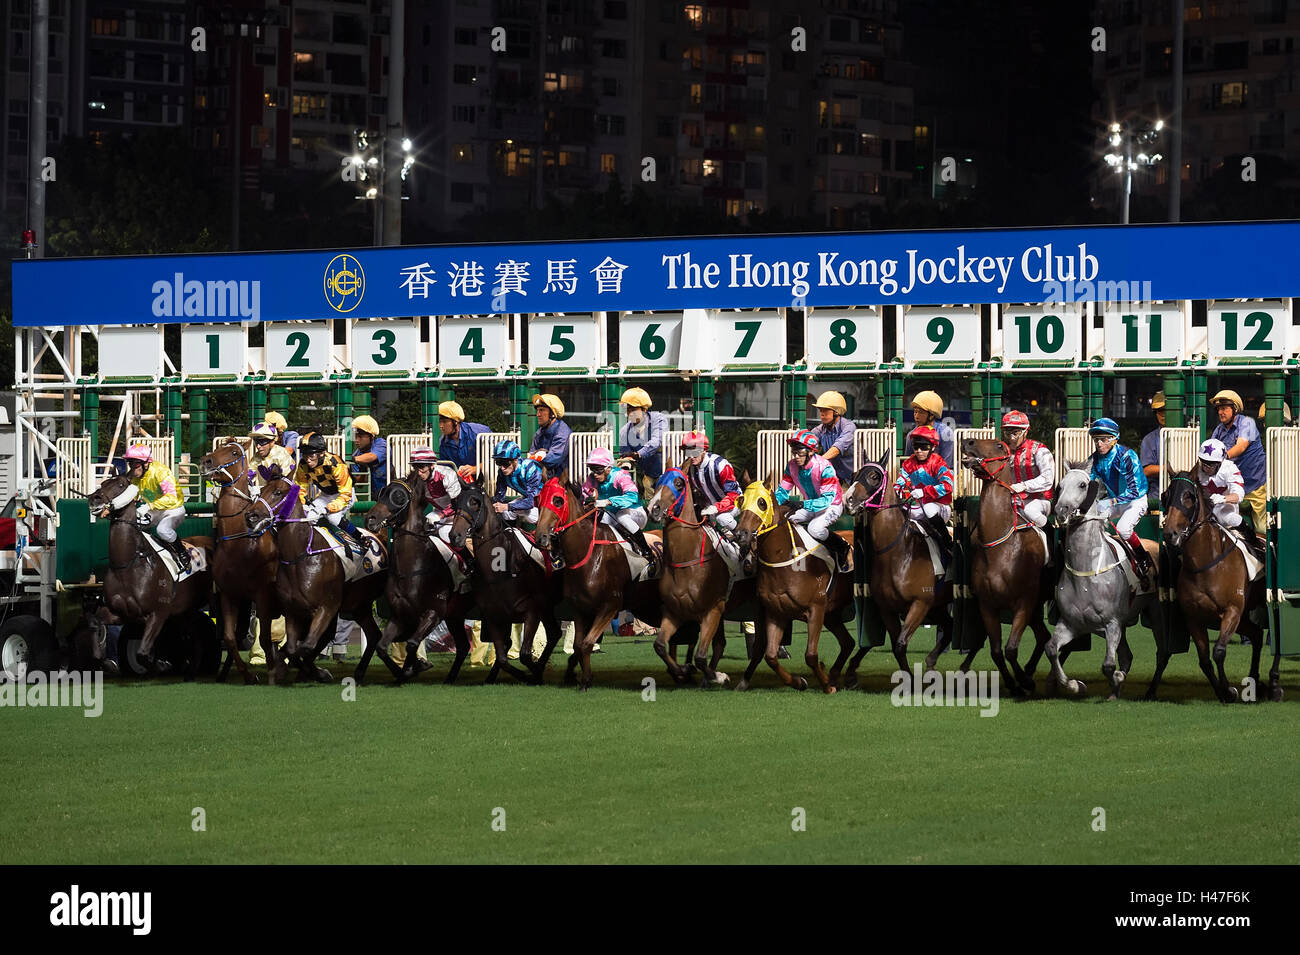 Happy Valley horse racing track, Hong Kong, China Stock Photo Alamy